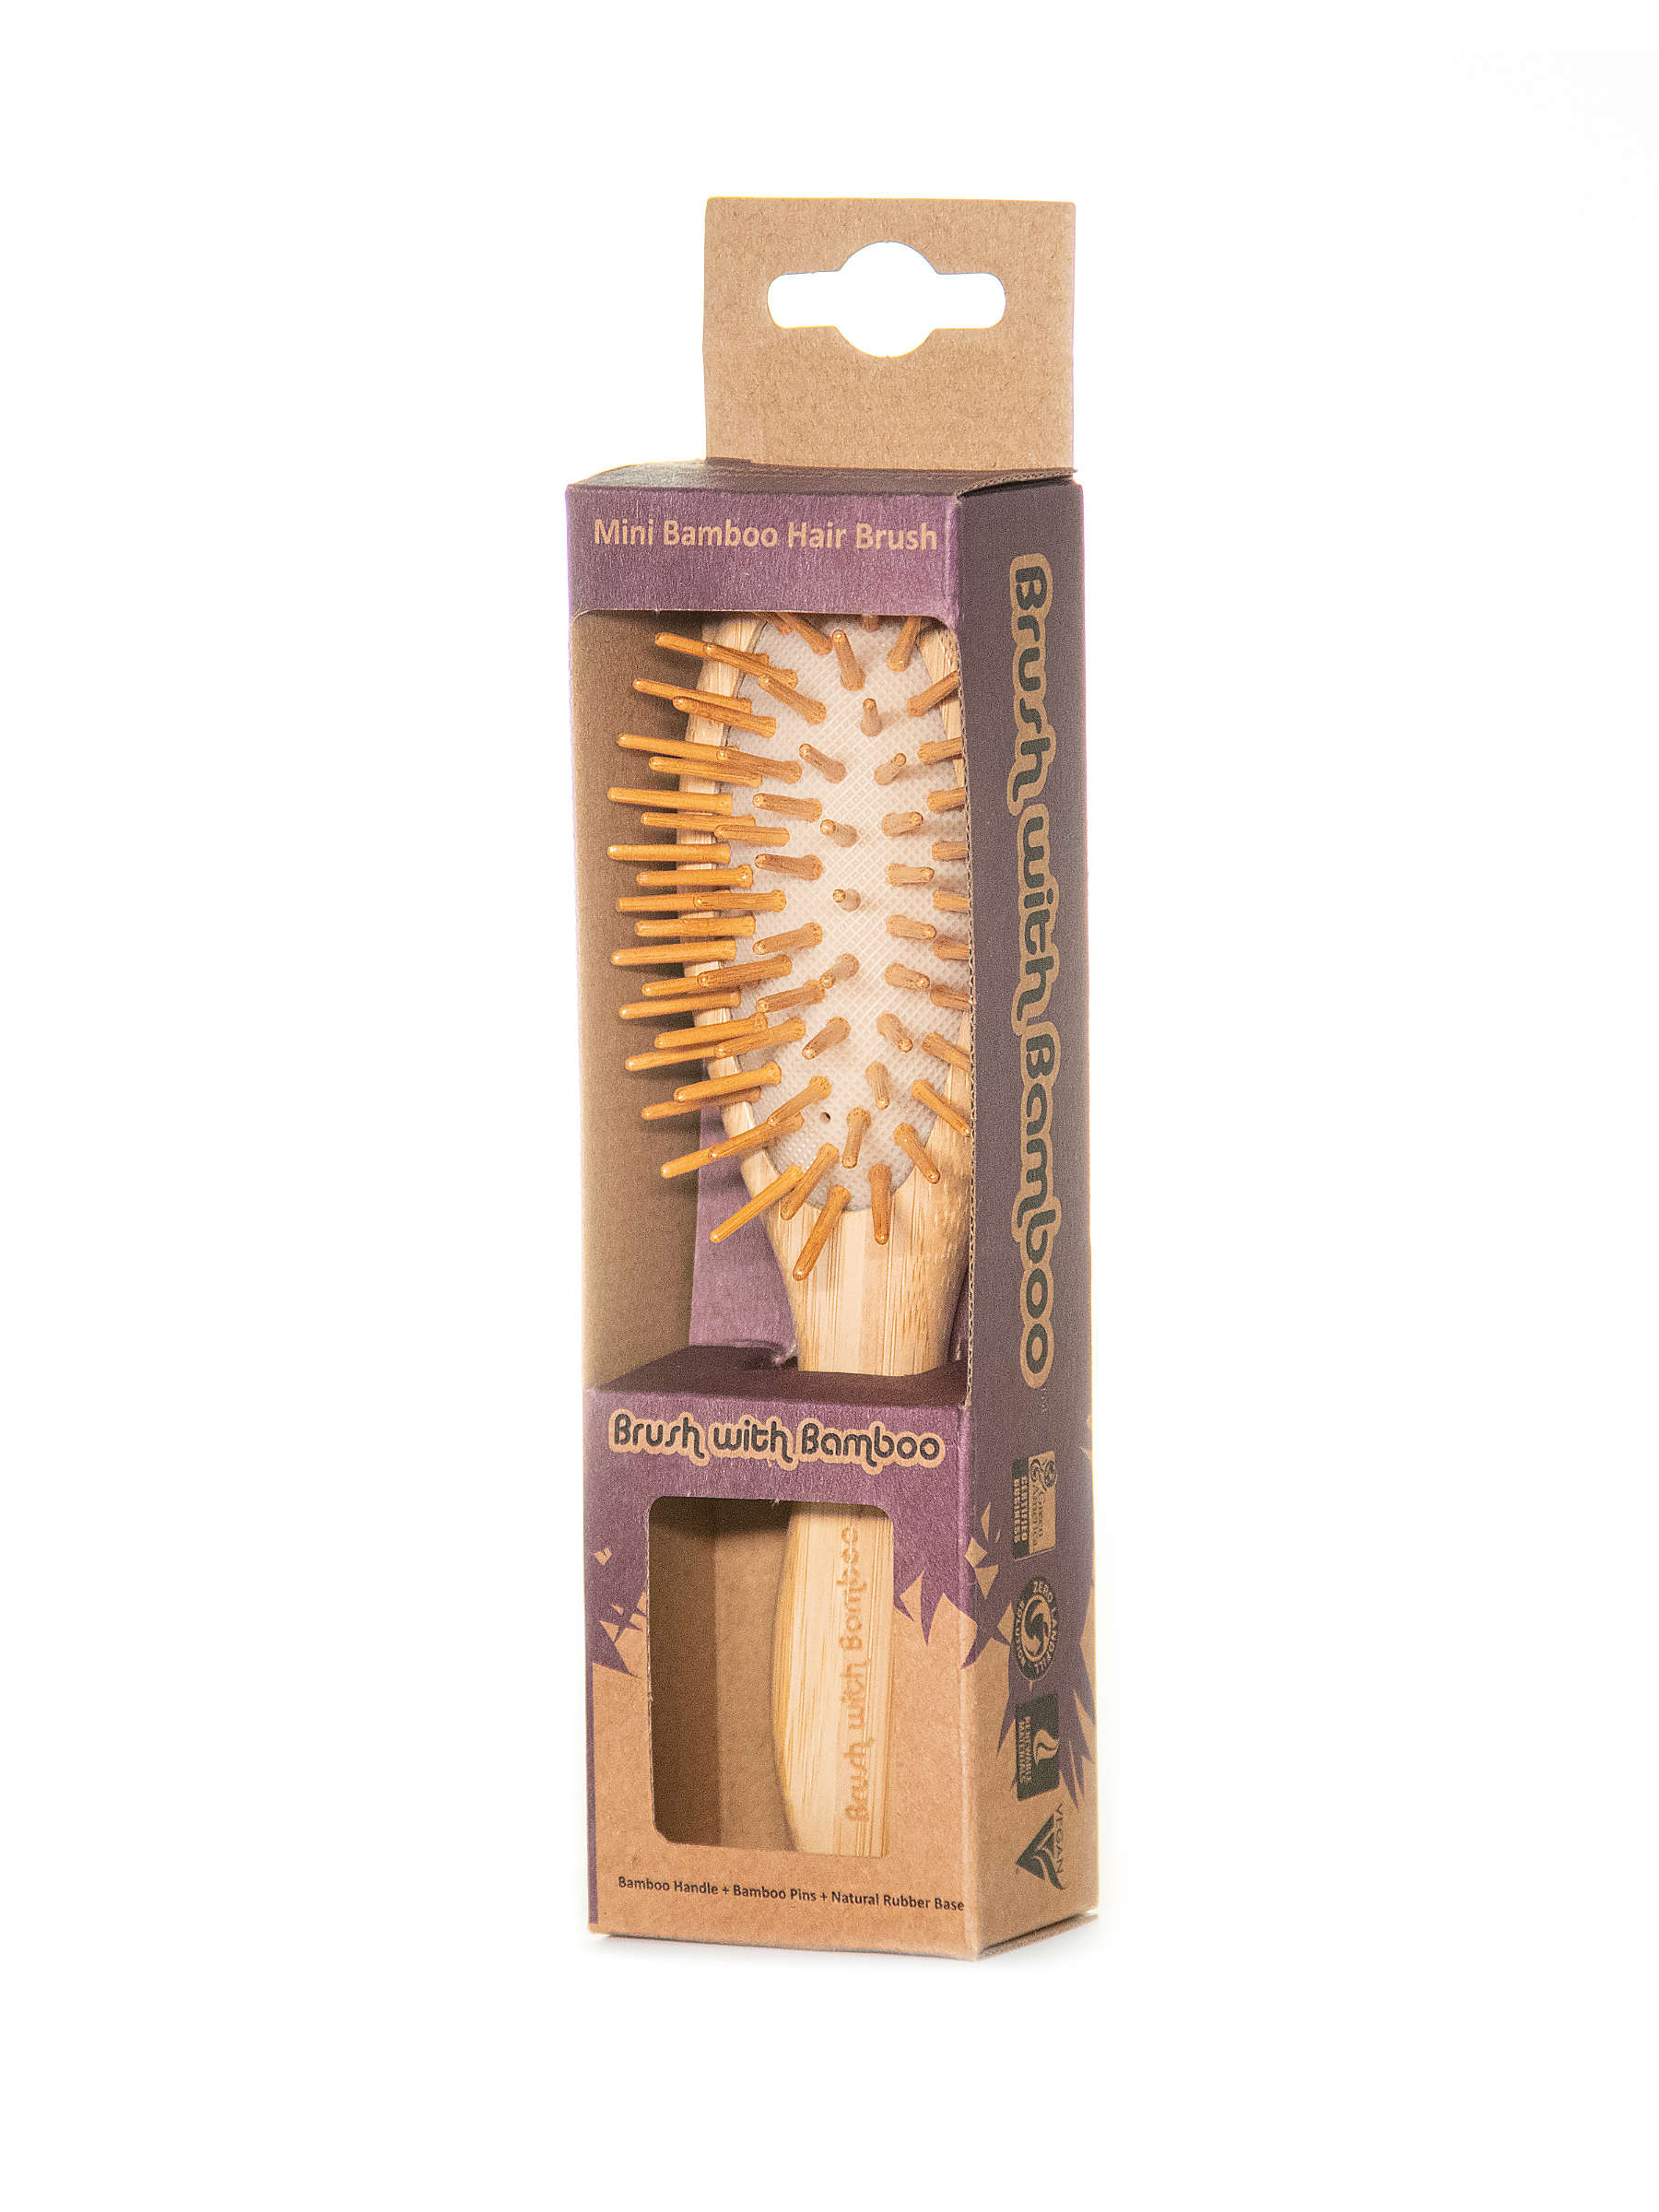 Mini Bamboo Hair Brush Brush With Bamboo